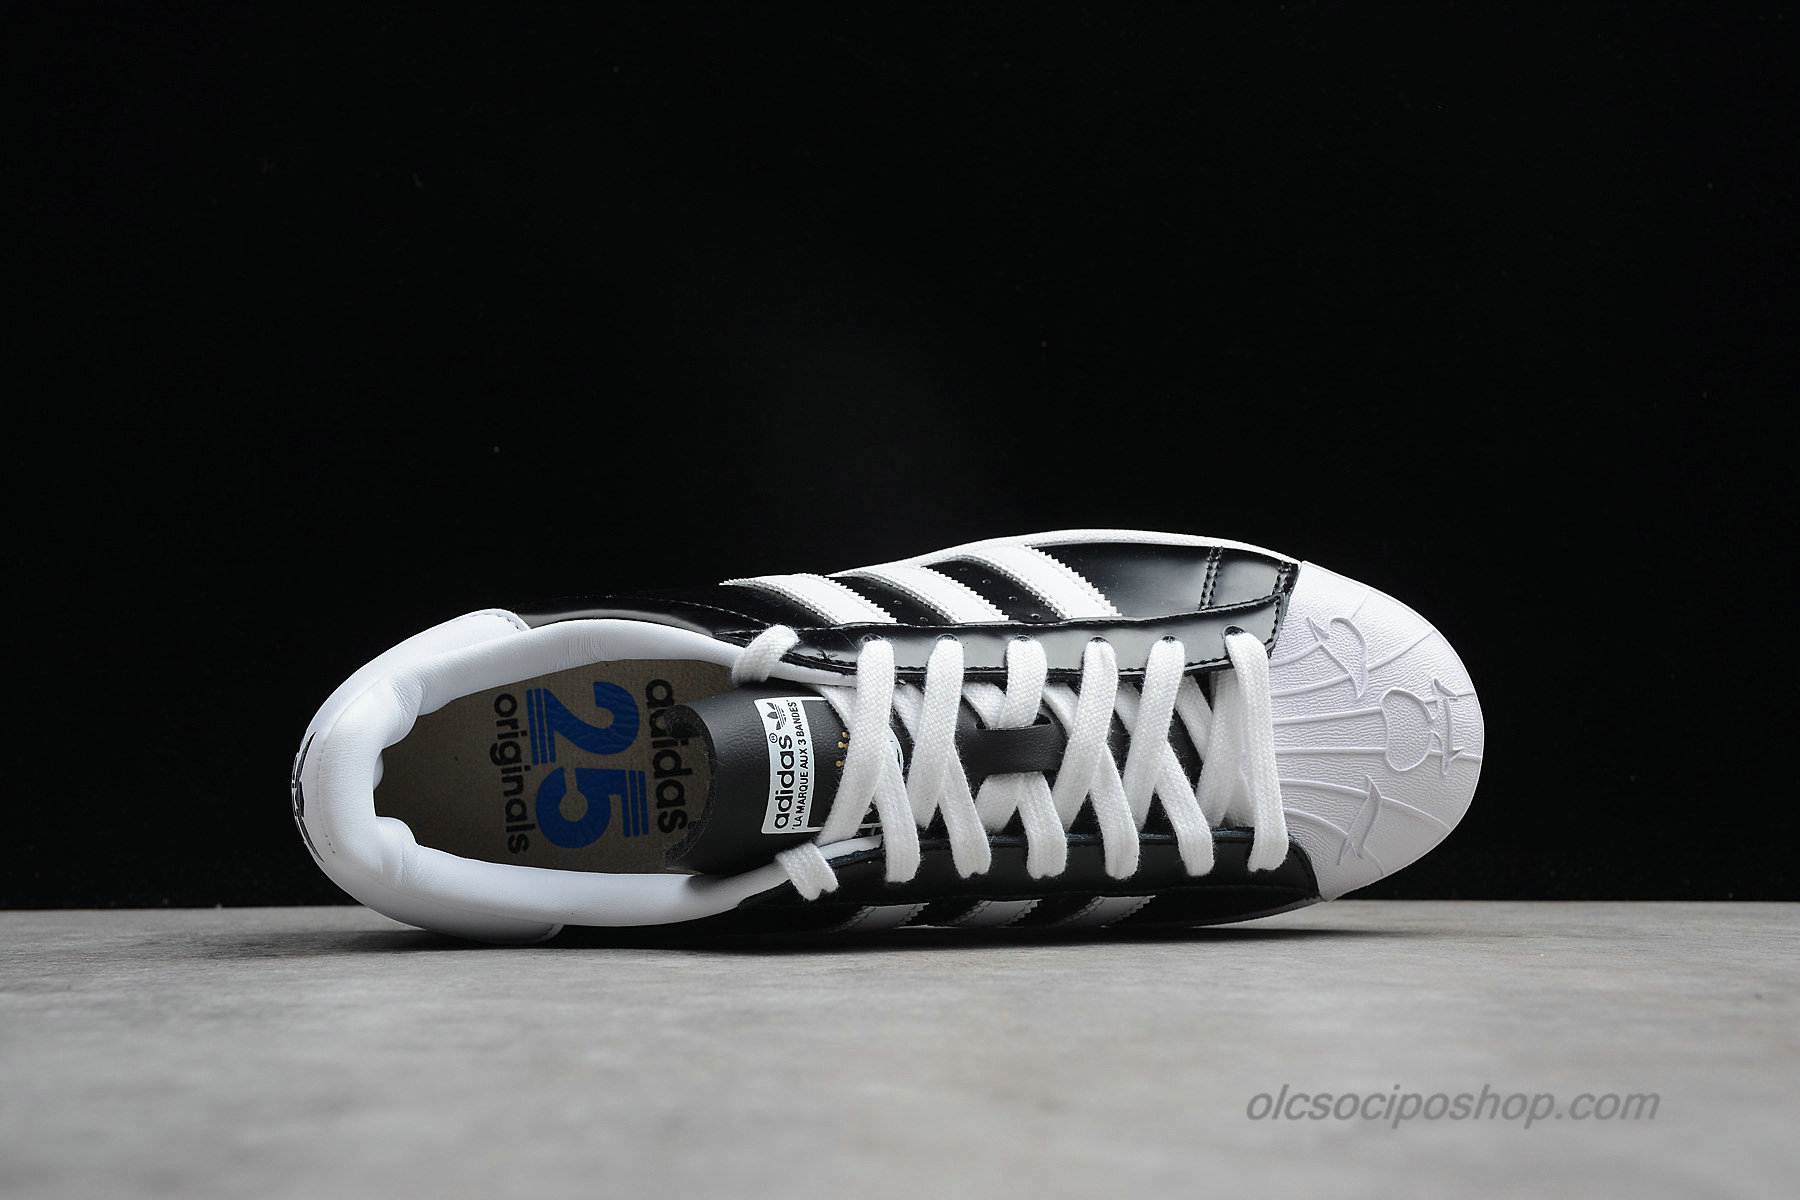 Adidas Superstar Nigo Bearfoot Fekete/Fehér Cipők (S83386) - Kattintásra bezárul